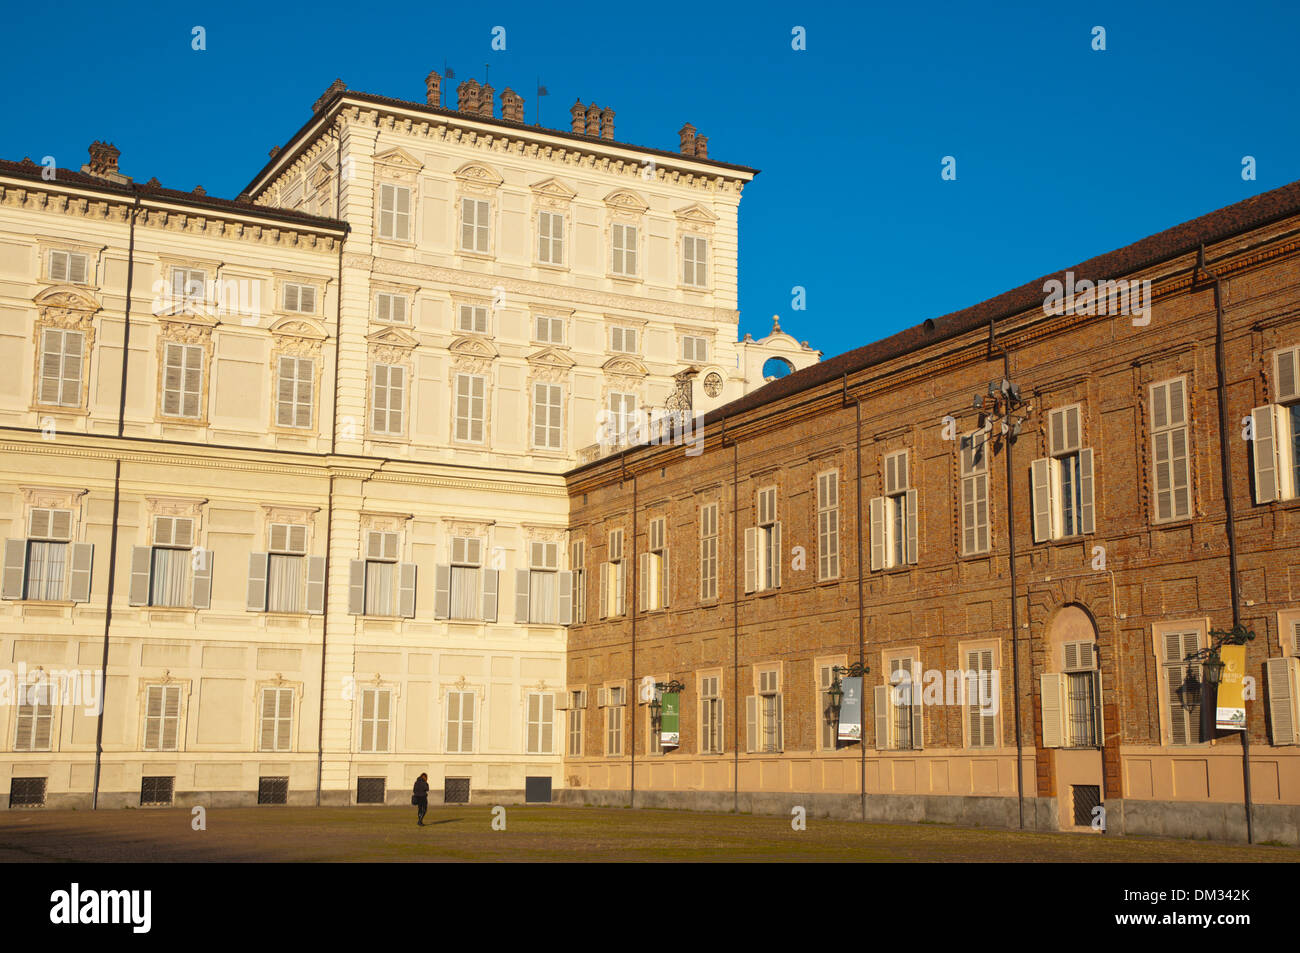 Palazzo Reale il palazzo reale Piazza Reale piazza centrale della città di Torino Piemonte Italia del nord Europa Foto Stock